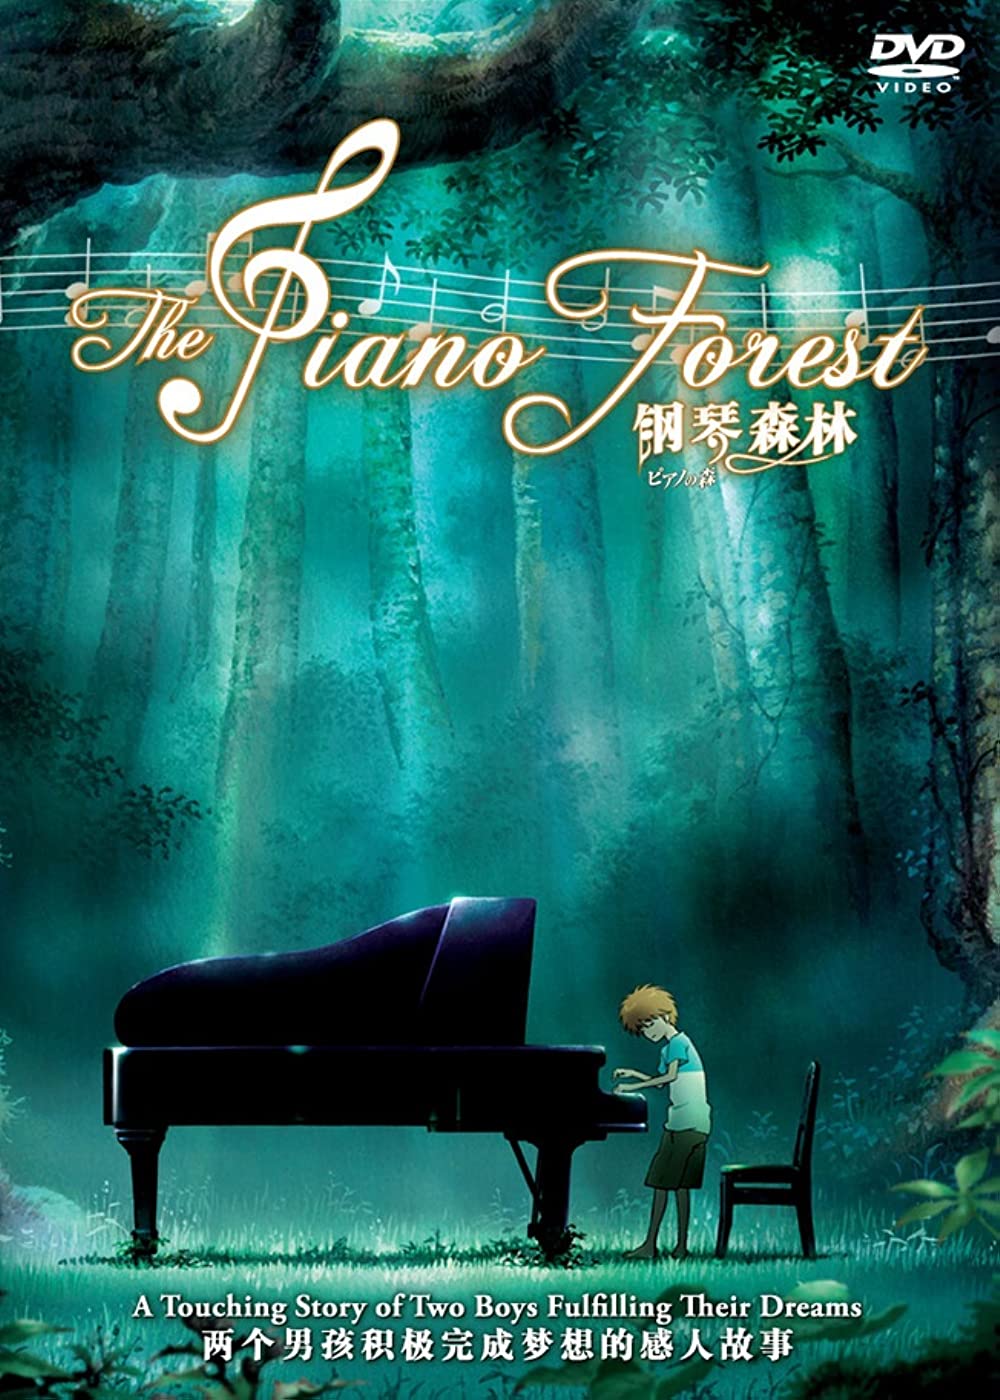 Filmbeschreibung zu The Piano Forest